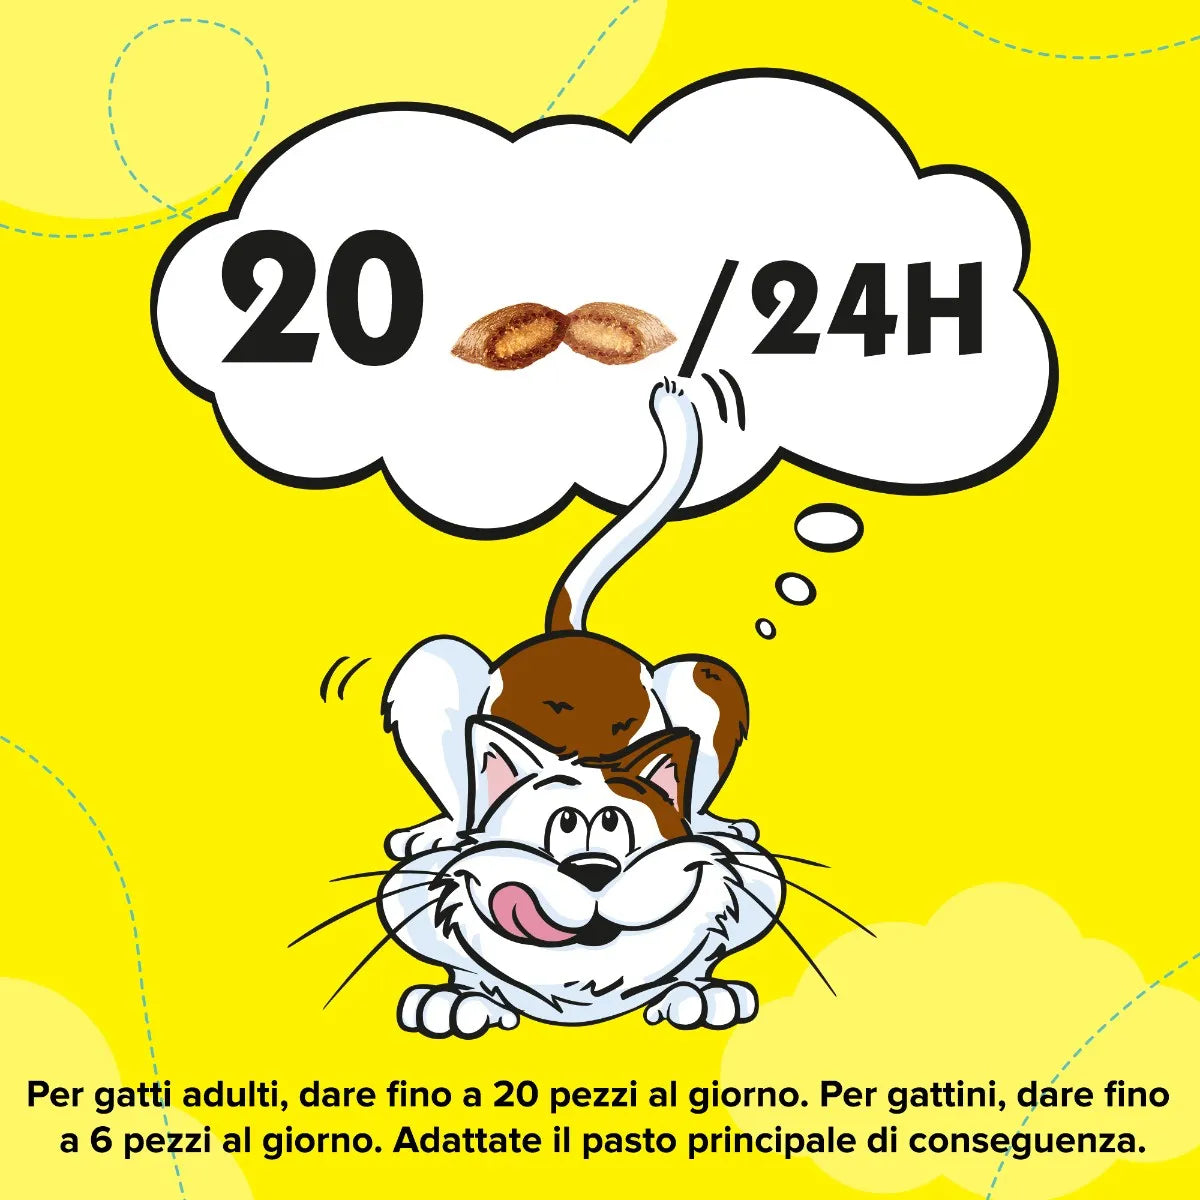 3x Catisfactions con Gusto Salmone 60g Snack per Gatti